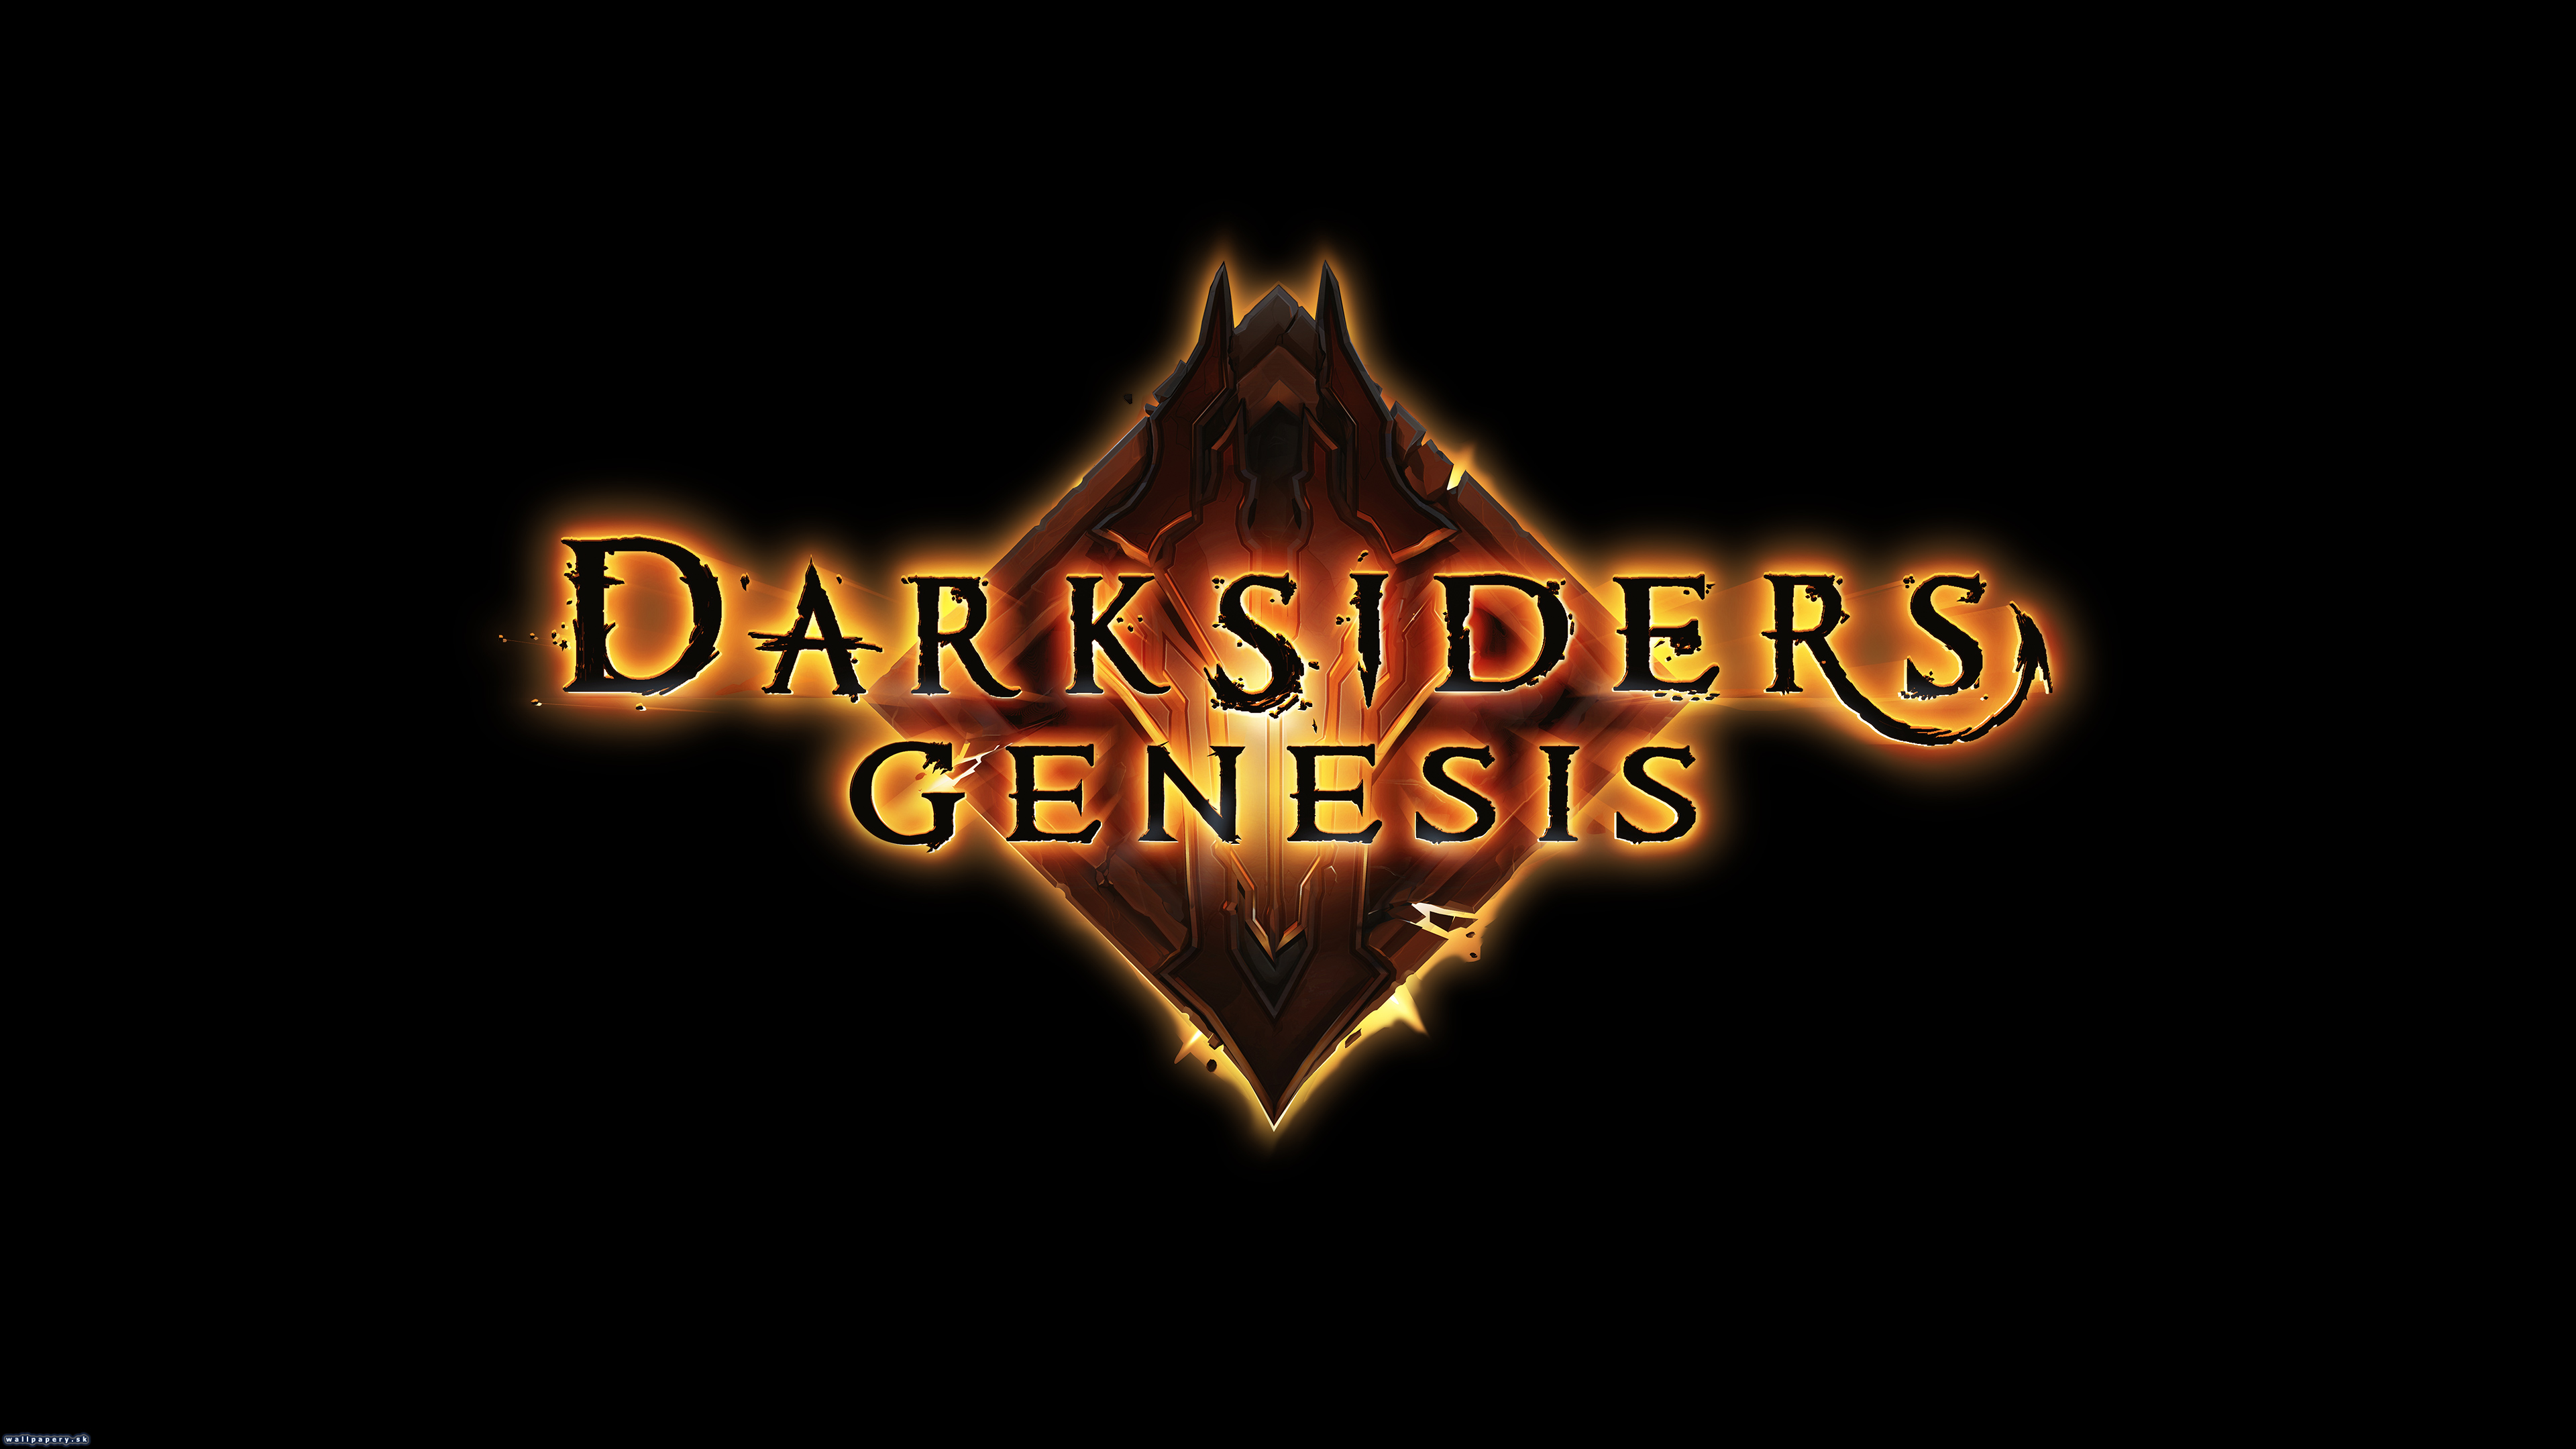 Darksiders Genesis - wallpaper 2